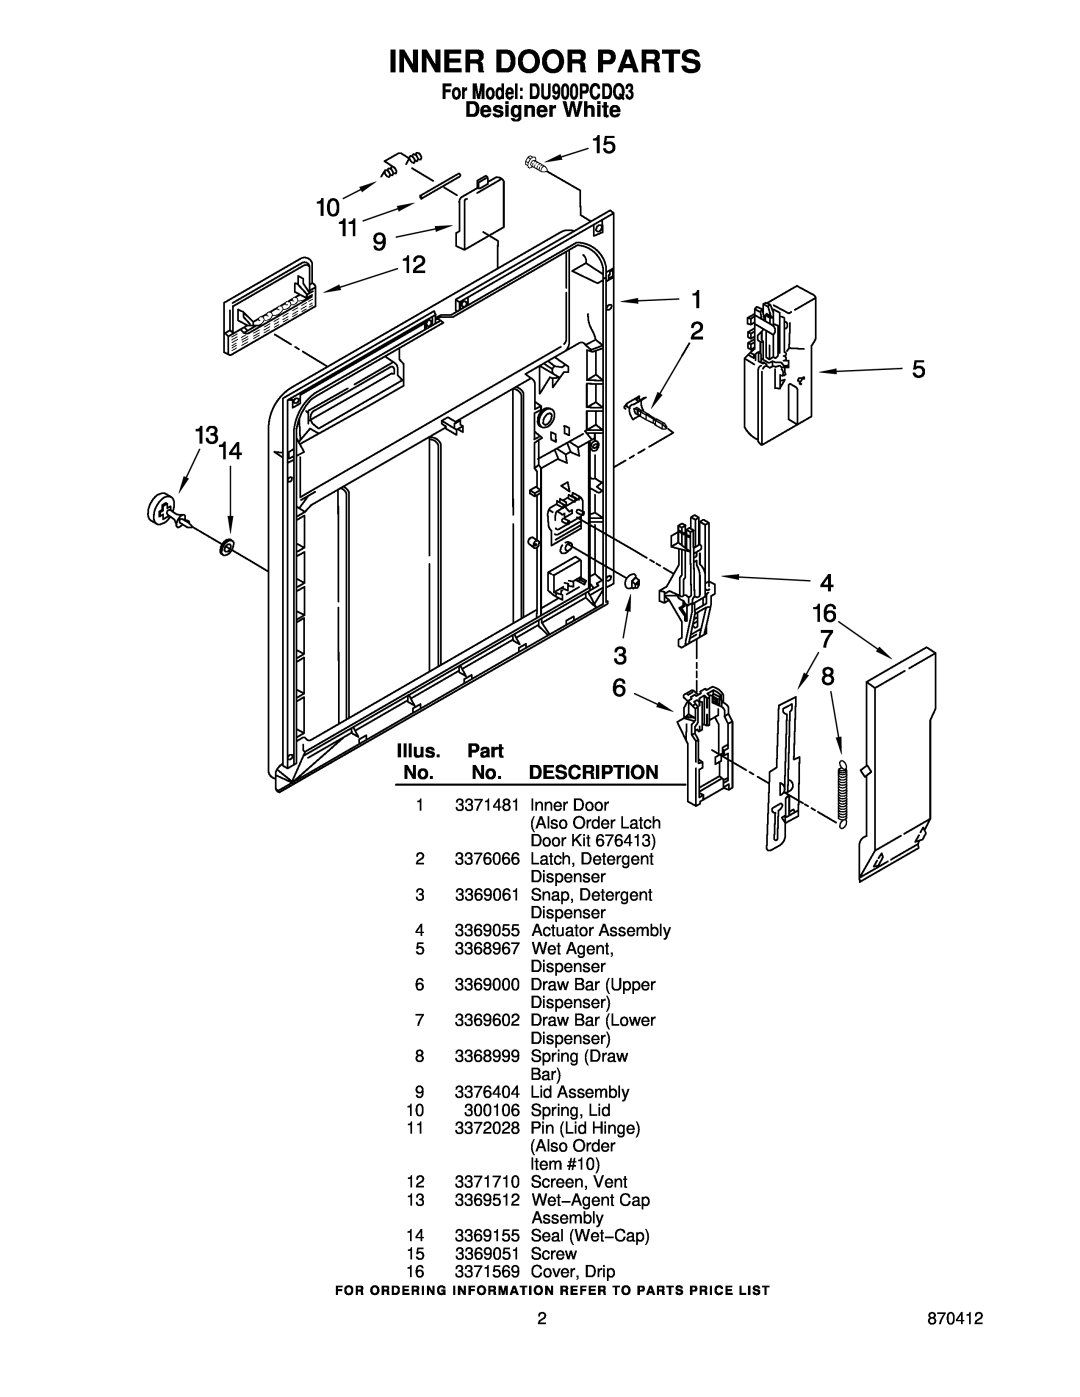 Whirlpool manual Inner Door Parts, For Model DU900PCDQ3 Designer White, Also Order Latch, Door Kit 